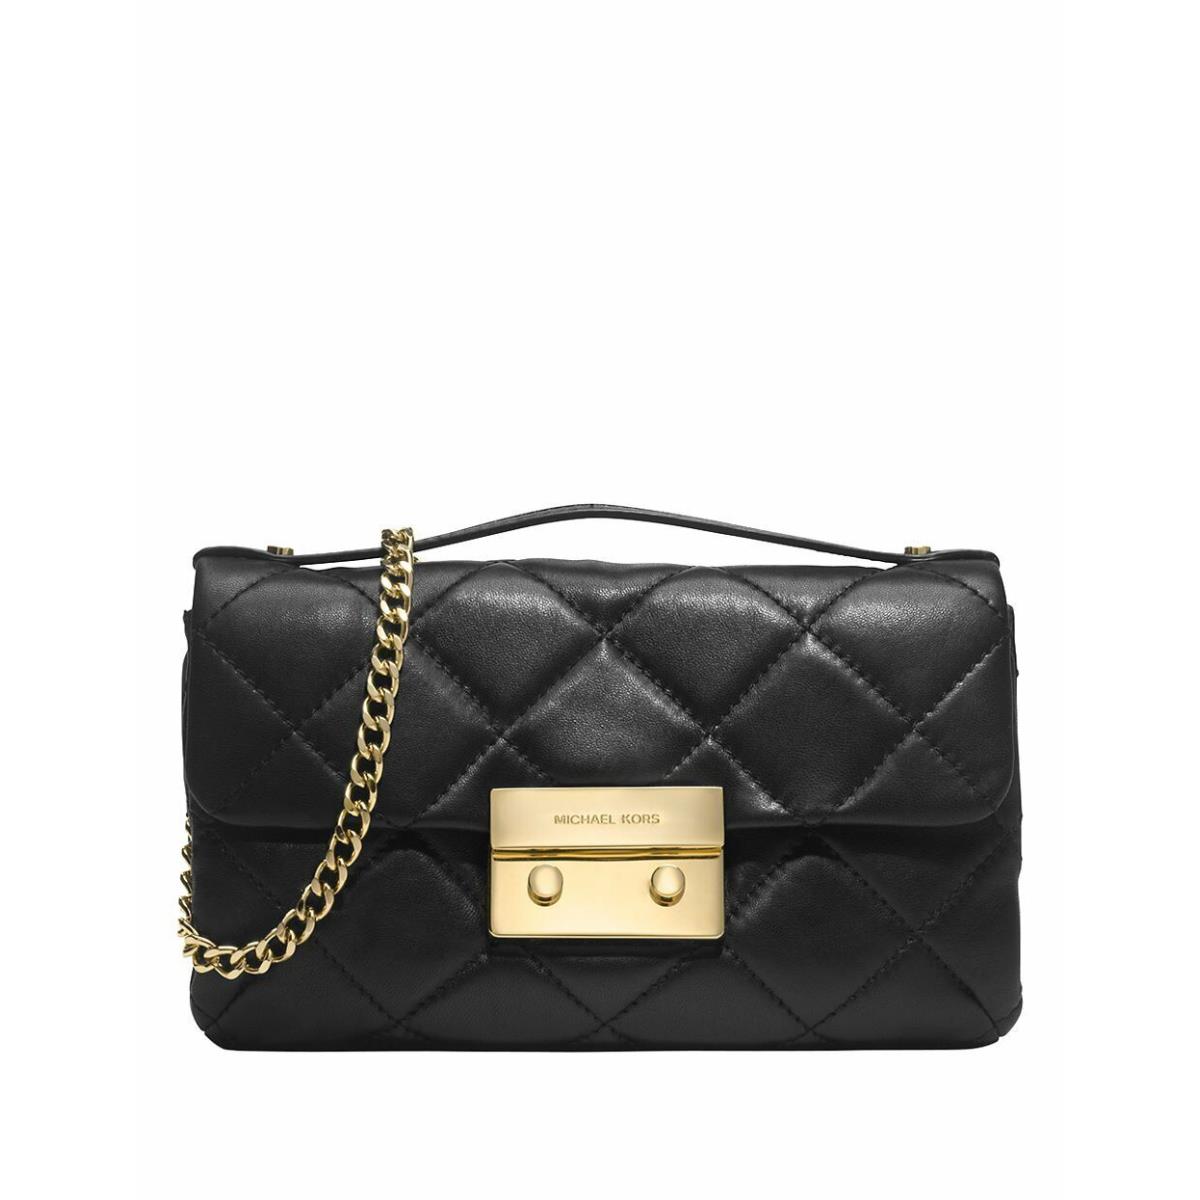 Michael Kors Black Quilted Small Clutch Black 30H3GSLM1 Sloan Handbag Bag